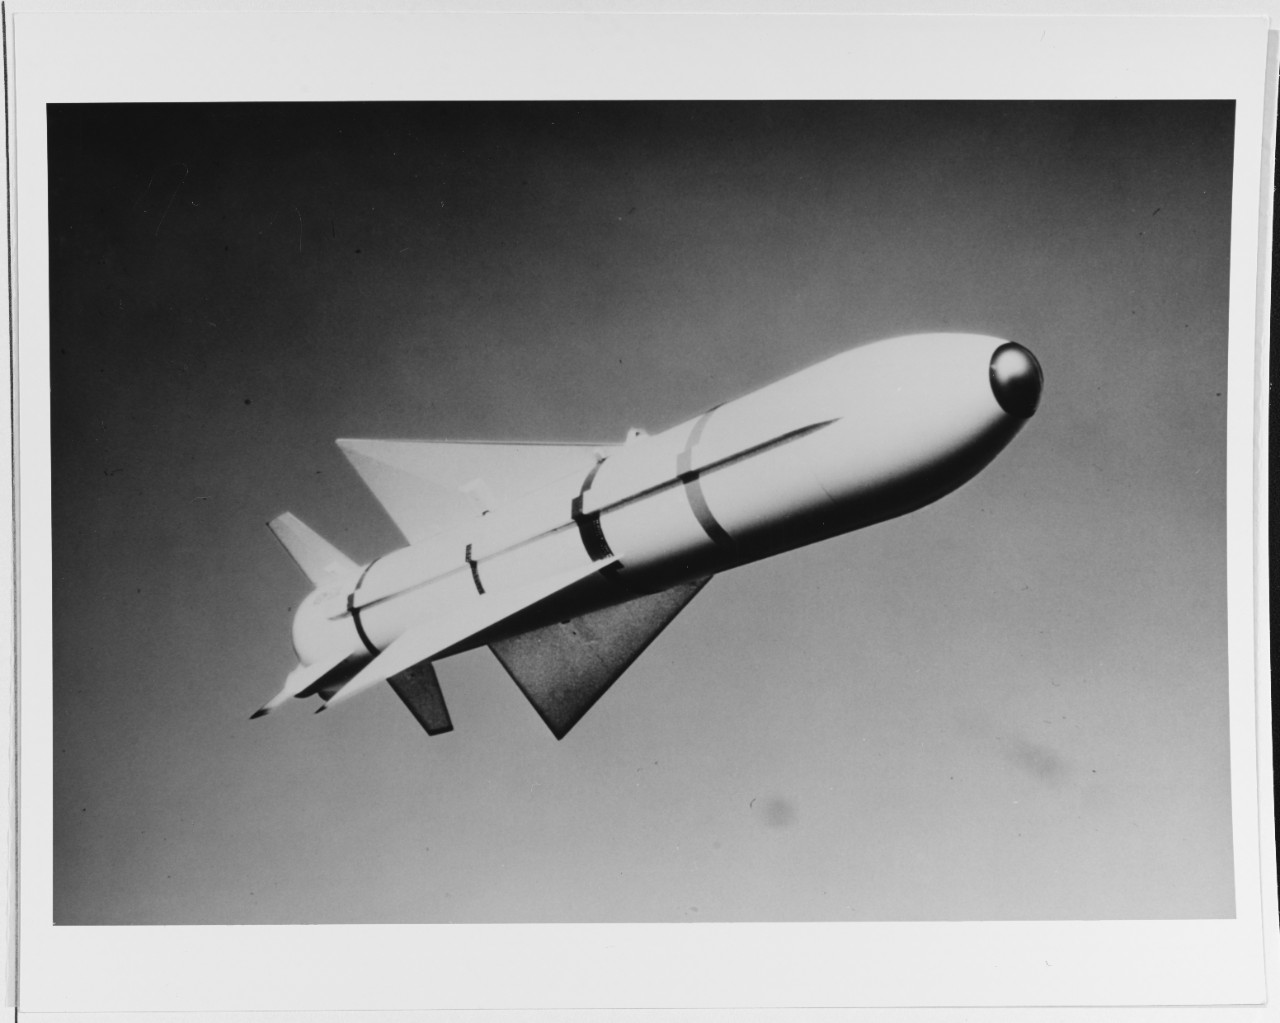 AGM-53A Condor Missile